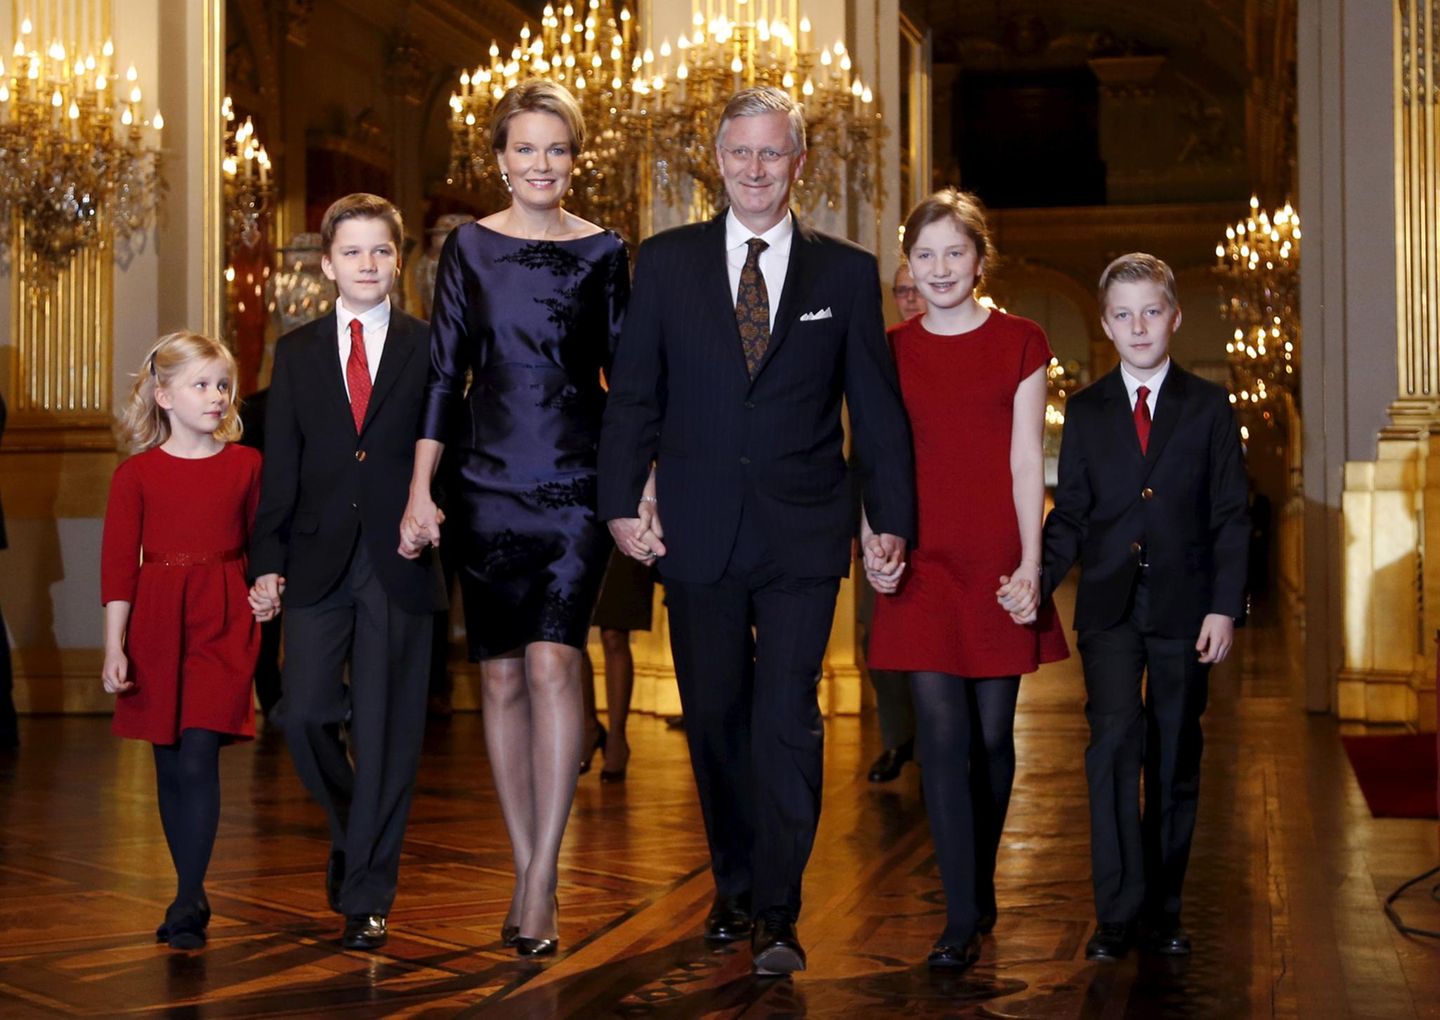 16. Dezember 2015  Die belgische Königsfamilie ist in Weihnachtsstimmung: Königin Mathilde und König Philippe sind mit ihren Kindern Prinzessin Eleonore, Prinz Gabriel, Kronprinzessin Elisabeth und Prinz Emmanuel auf dem Weg zu dem Weihnachtskonzert im Königspalast in Brüssel.